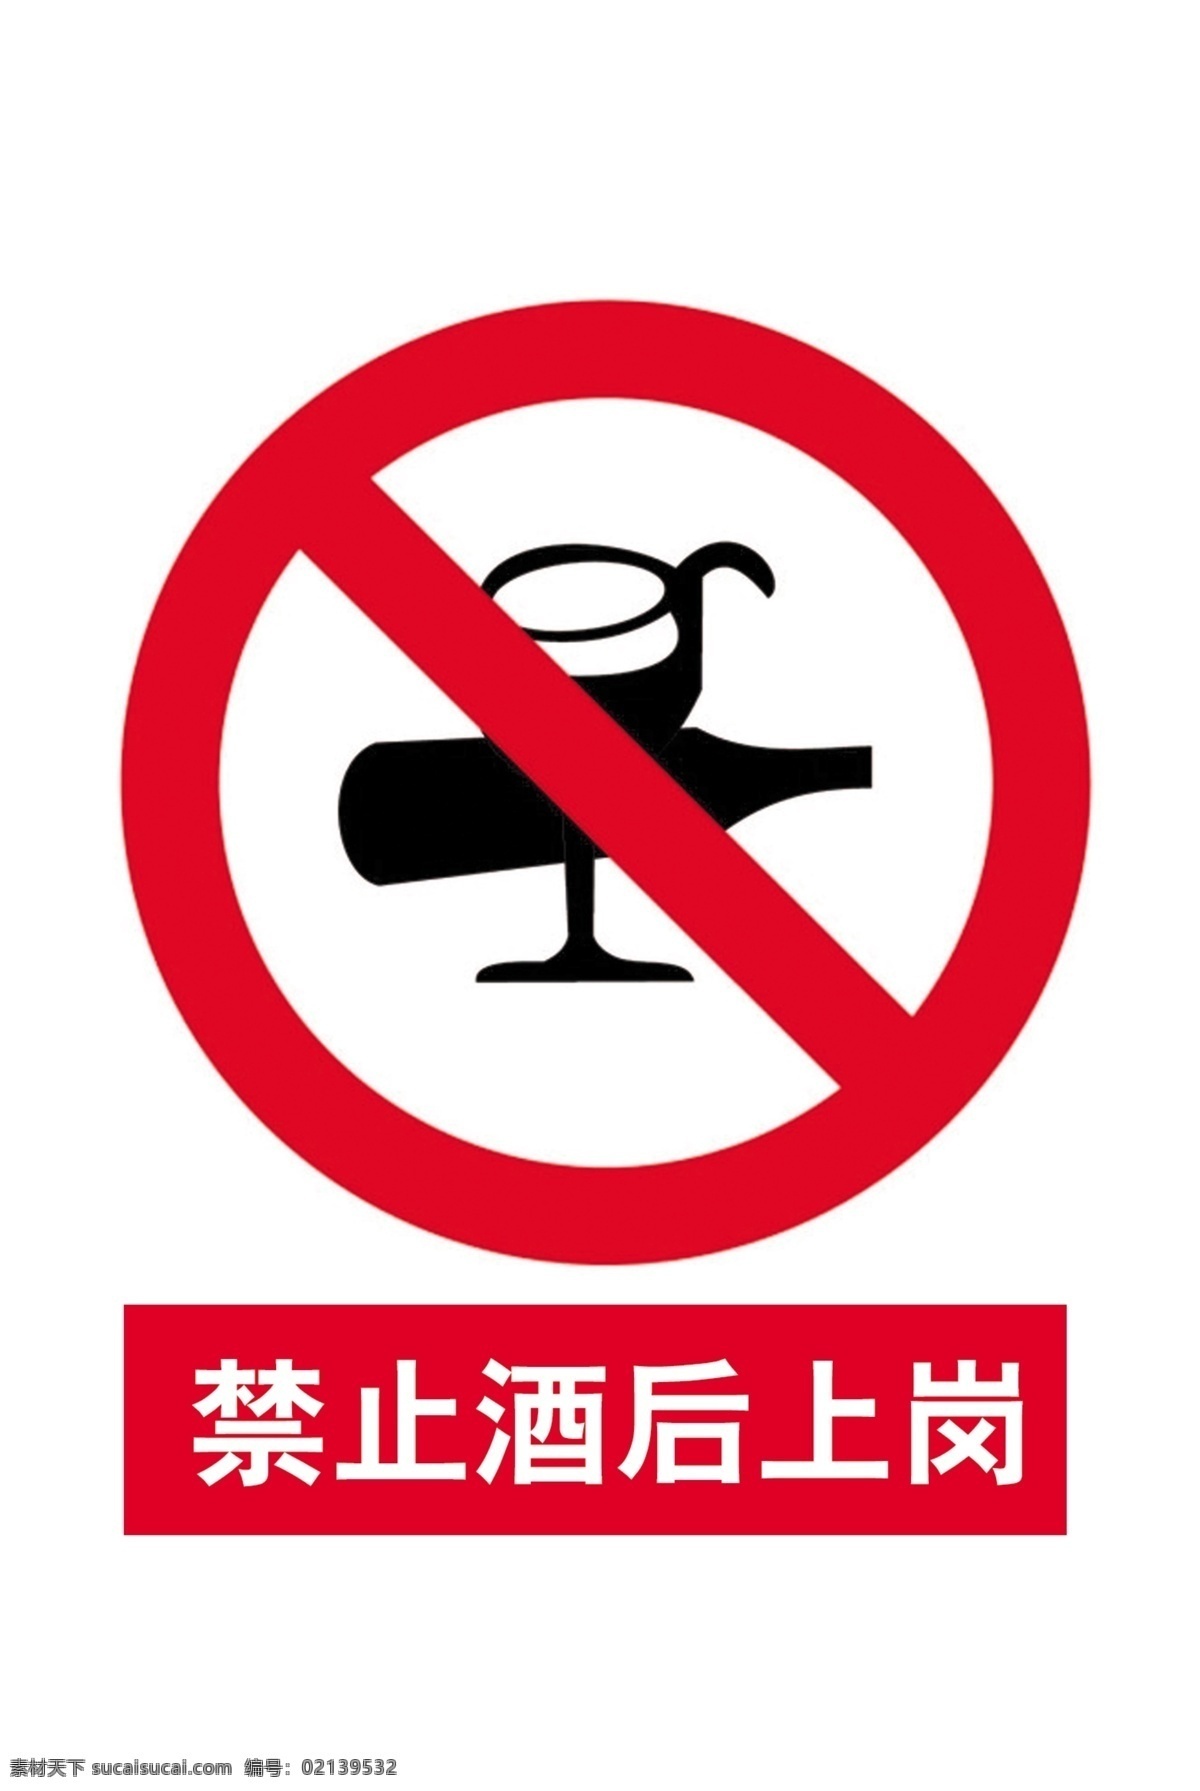 禁止酒后上岗 禁止 酒后 上岗 安全 标示 安全警示标牌